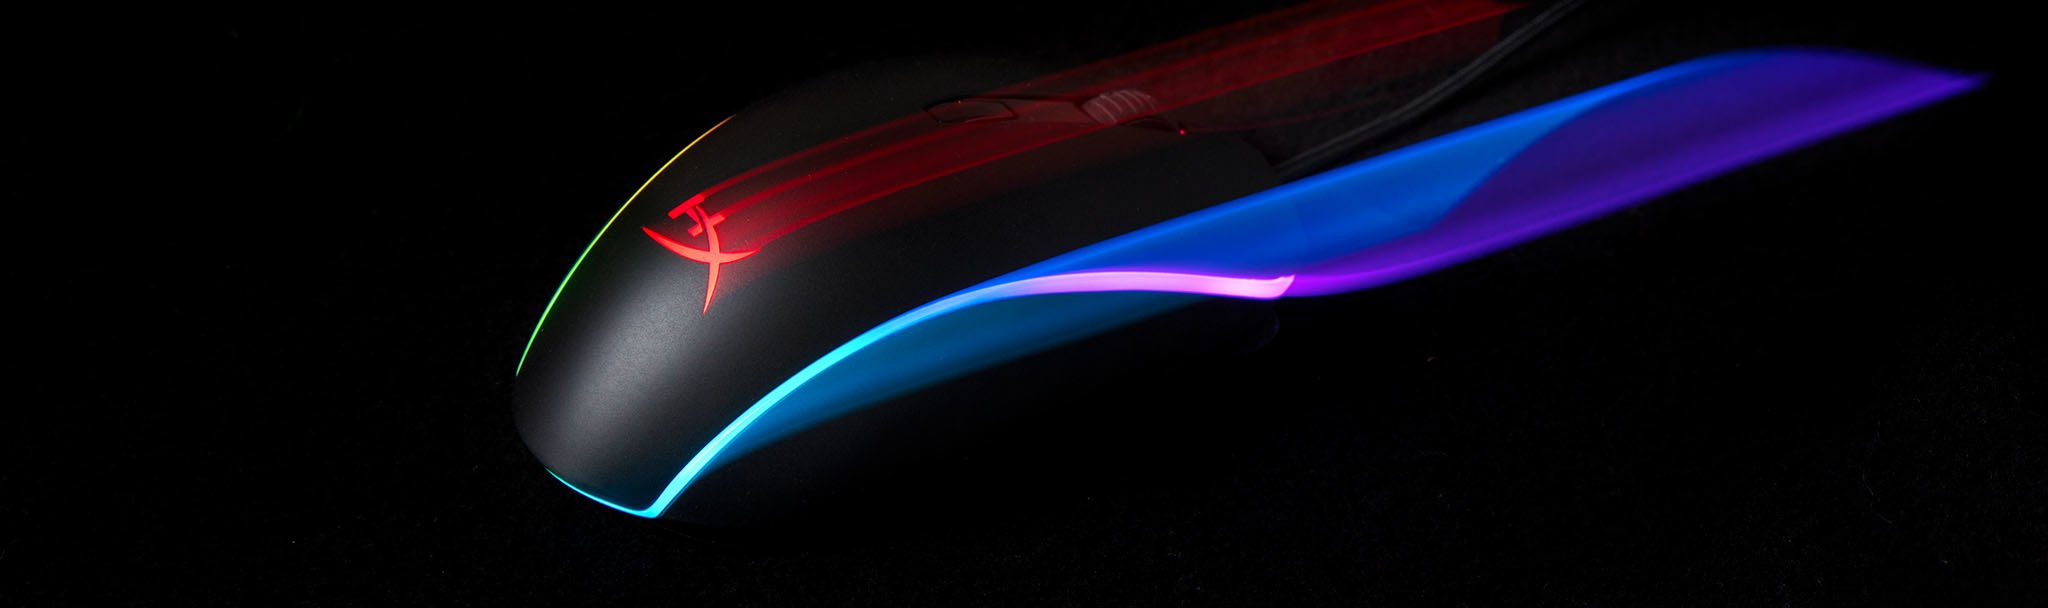 Chuột Kingston HyperX Pulsefire Surge RGB USB  có hiệu ứng led rực rỡ